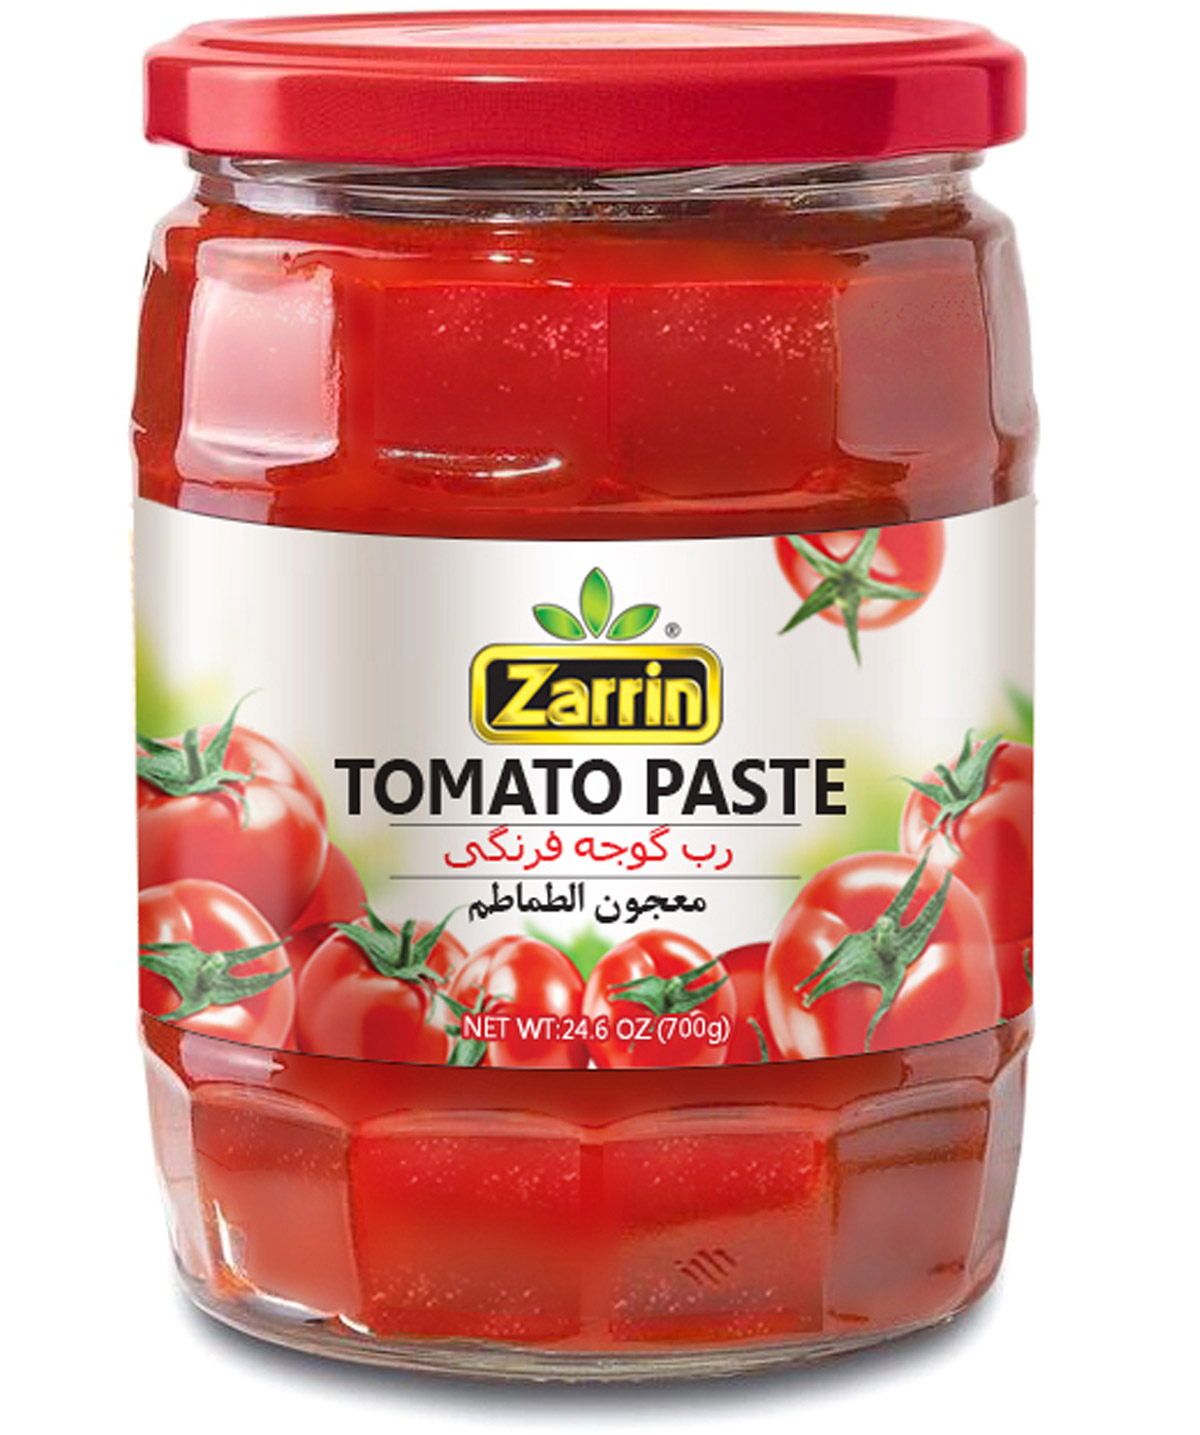 Zarrin Tomato Paste In Glass Jar